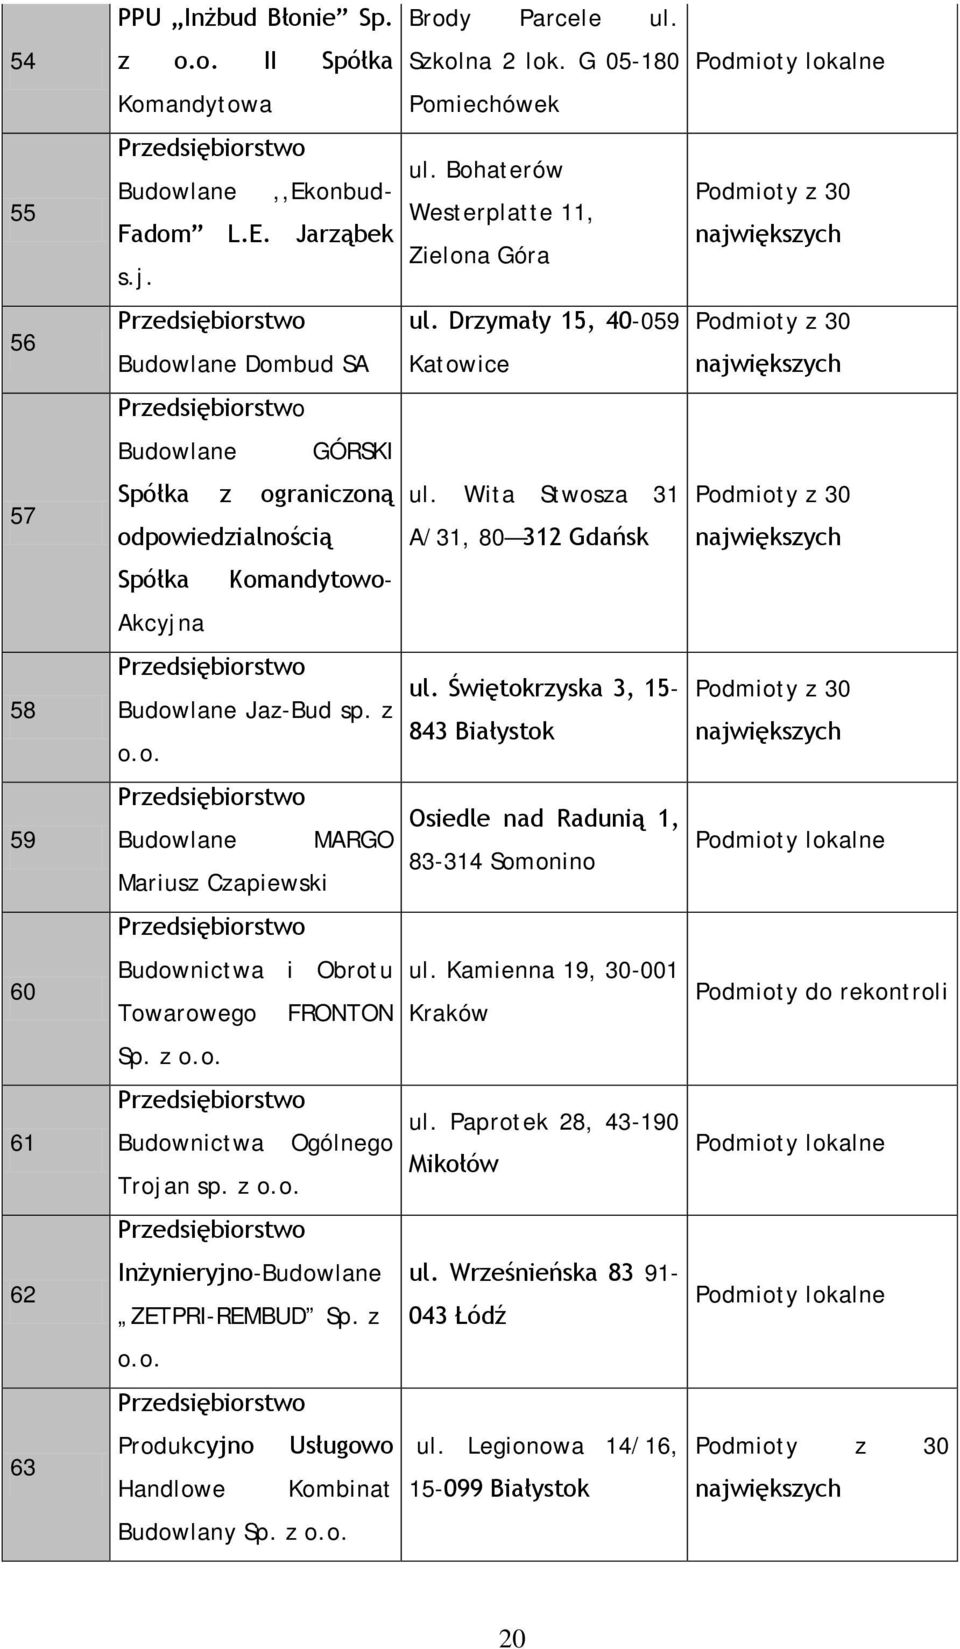 Wita Stwosza 31 A/31, 80 312 Gdańsk Podmioty z 30 największych Spółka Komandytowo- Akcyjna 58 Przedsiębiorstwo Budowlane Jaz-Bud sp. z o.o. ul.